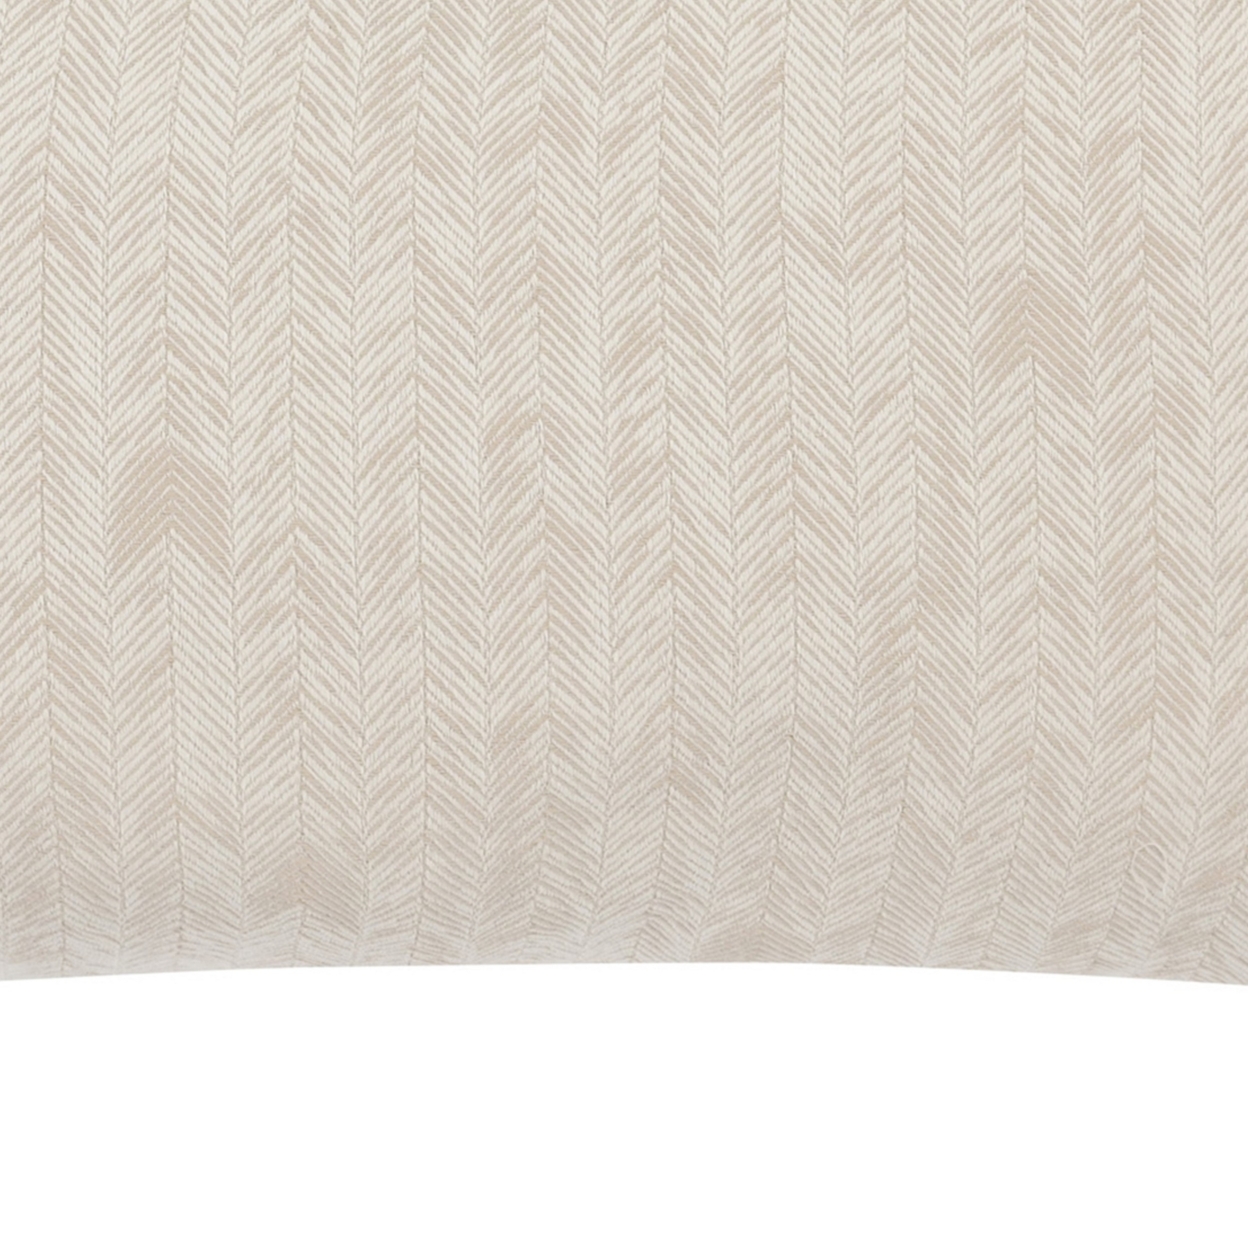 Zima 20 X 36 Lumbar King Pillow Sham With Woven Herringbone Pattern, Beige- Saltoro Sherpi